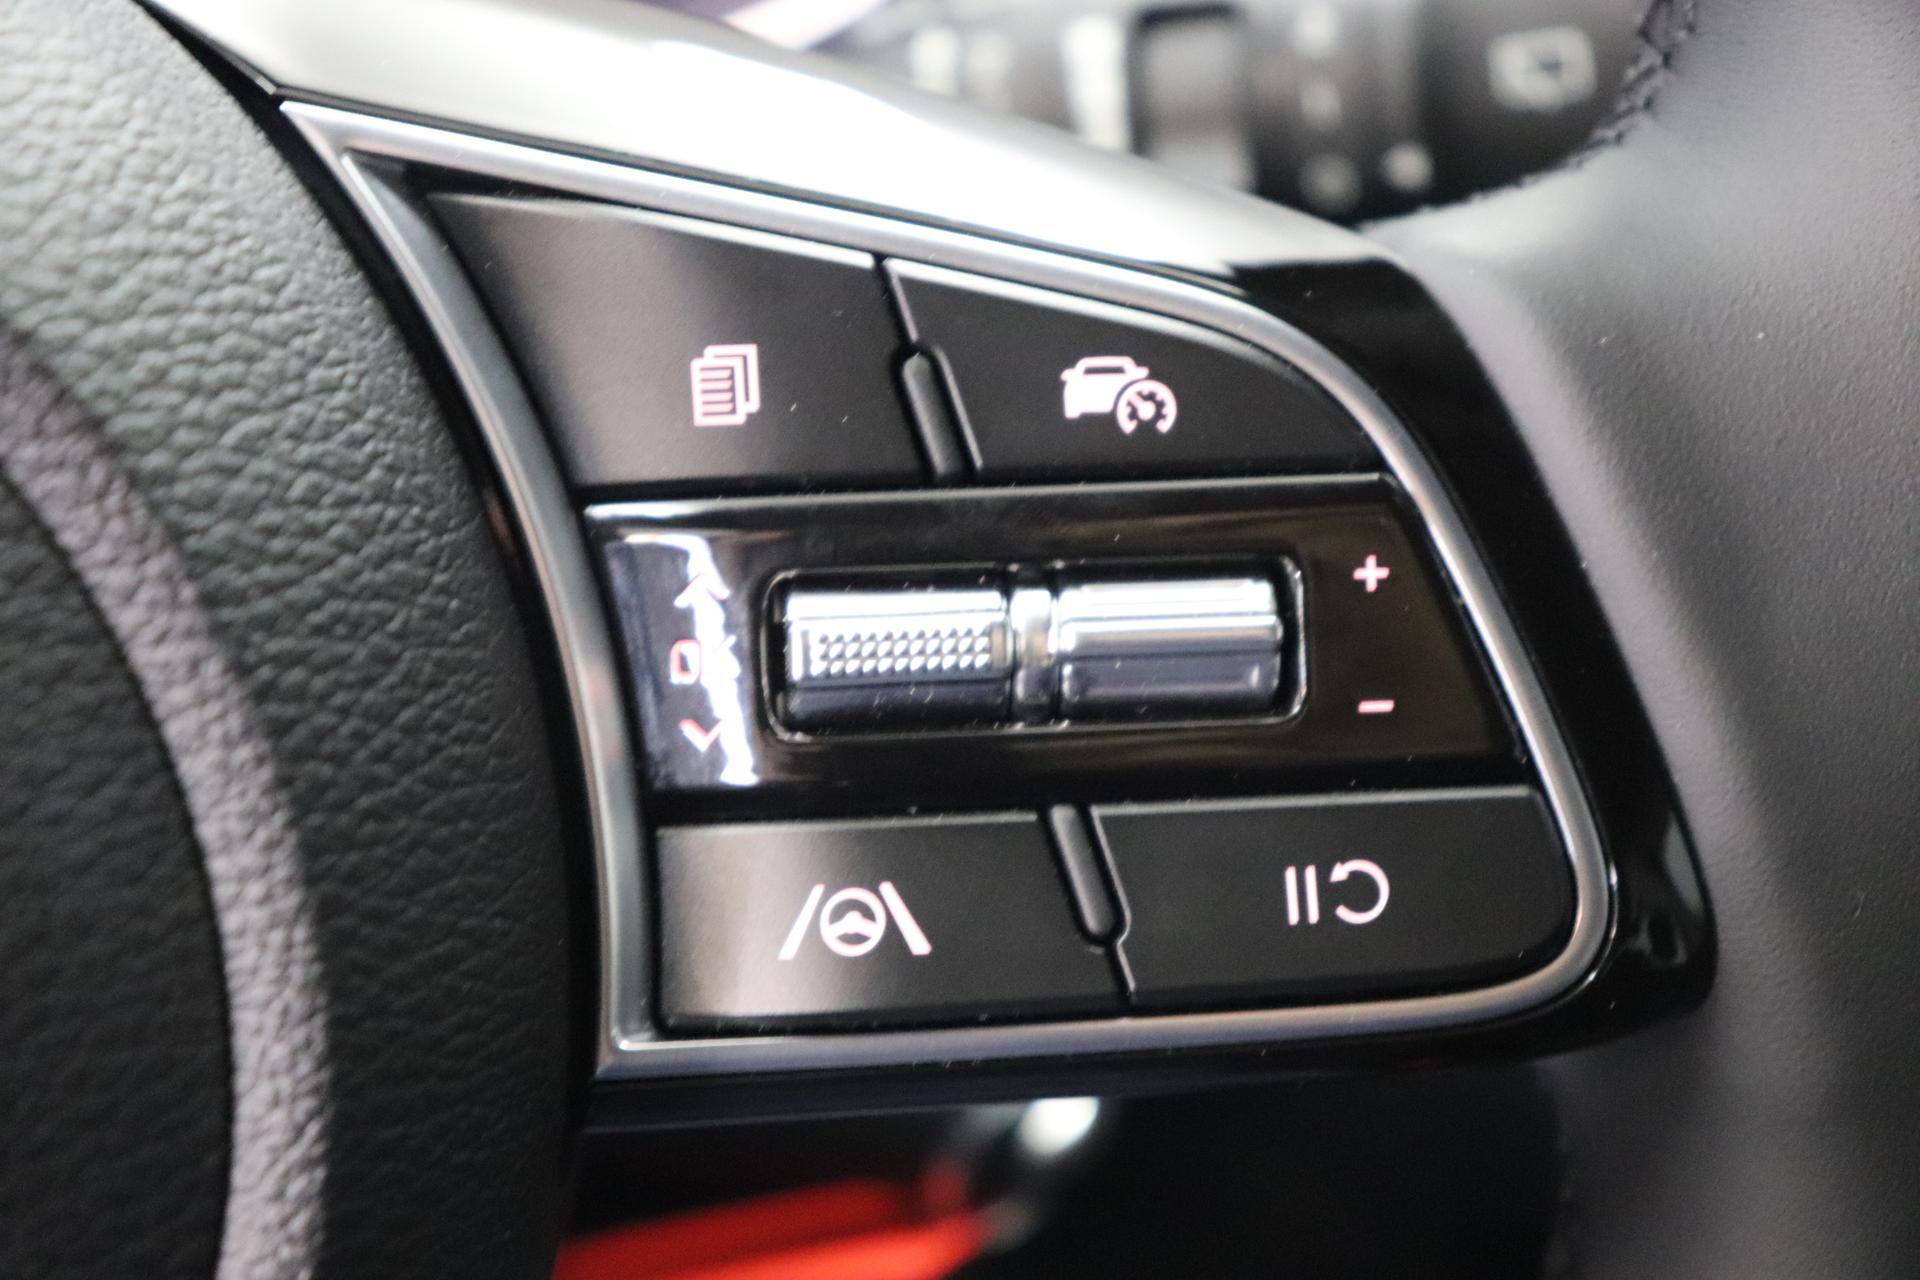 Kia Ceed Sportswagon Silver 1.0 T-GDI 74 kW (101 PS) Klimaanlage, Radio, DAB,  Sitzheizung, Lenkradheizung, Bluetooth, Freisprecheinrichtung, Lichtsensor,  Einparkhilfe hinten, Tempomat, Frontkolisionswarner, Spurfolgeassistent,  uvm.